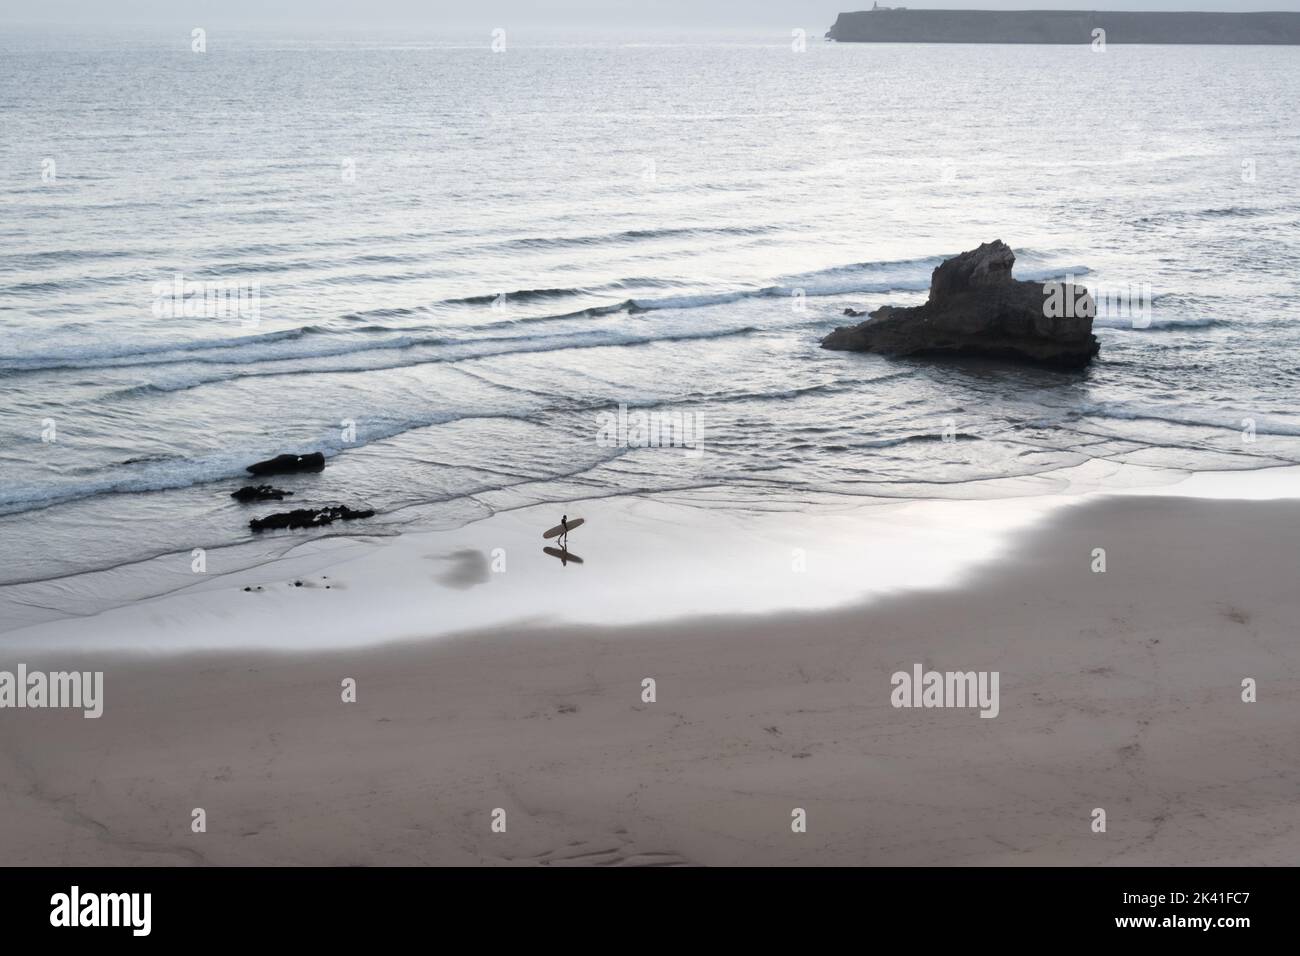 Sagres, Portugal - 30 mai 2022 : image monochrome d'une seule vague surfeuse à pied à la maison avec surf de la mer le long de la plage de sable au crépuscule à Sagres Portu Banque D'Images